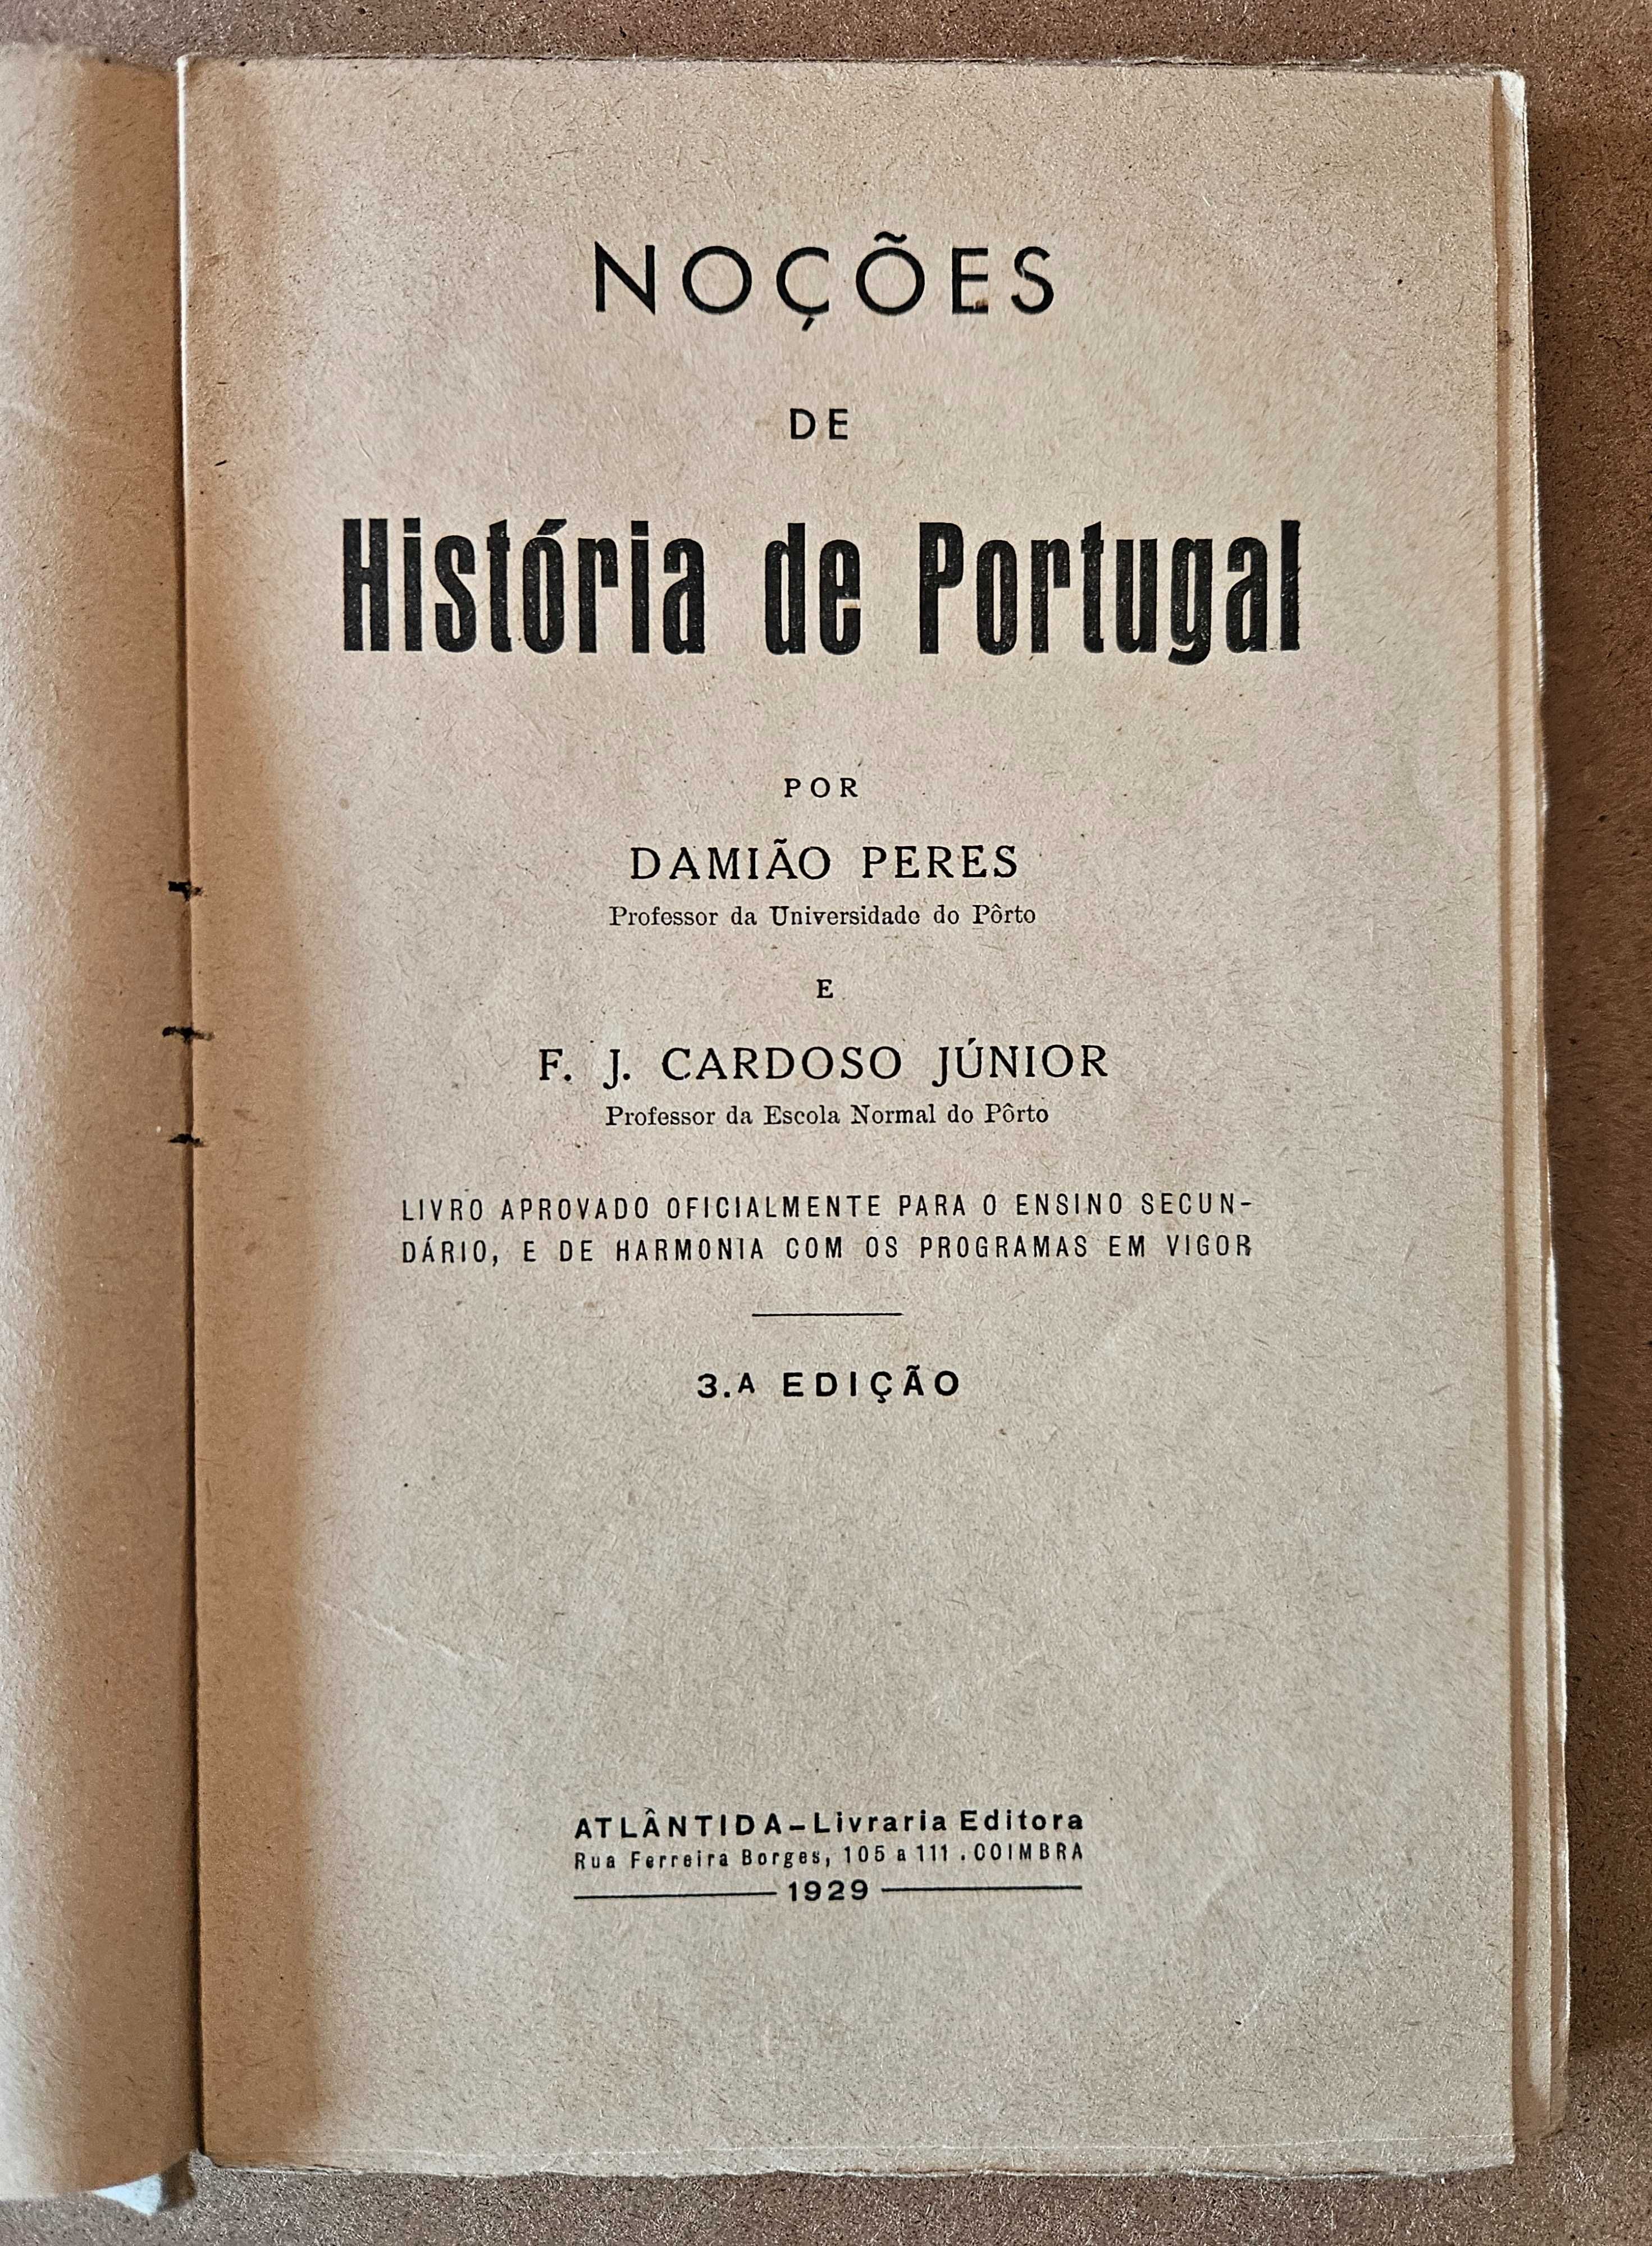 Livro Noções de História de Portugal - Damião Peres e Cardoso Júnior